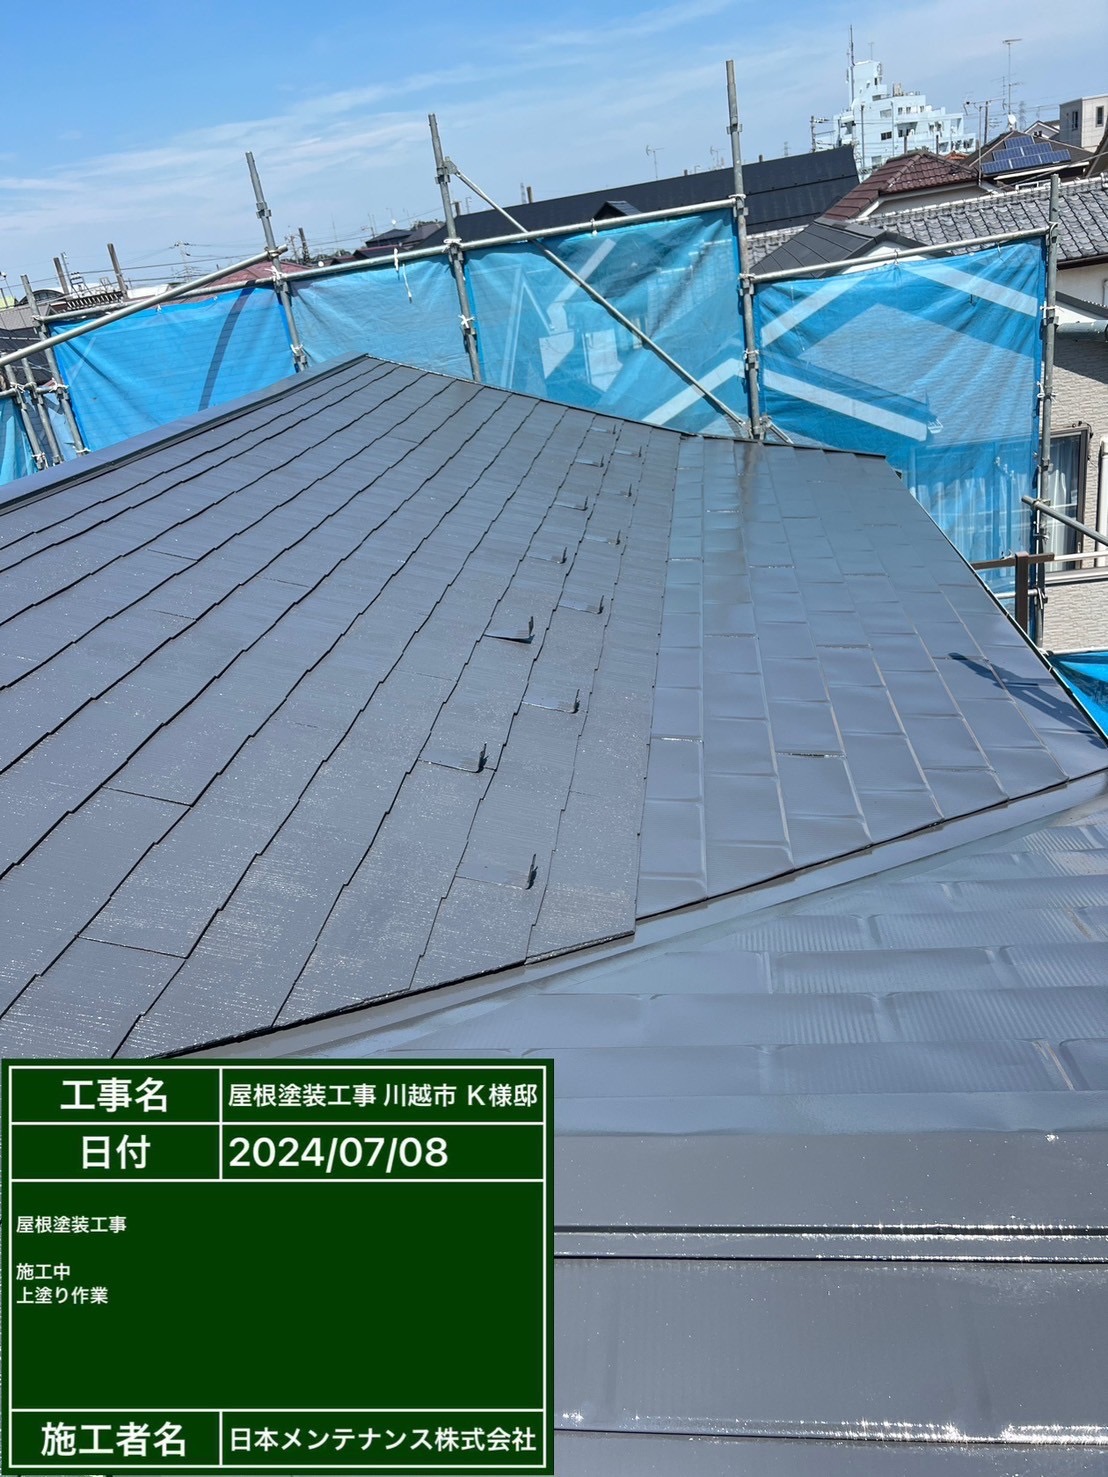 埼玉県川越市でスレート瓦と金属瓦の屋根をラジカル制御型塗料で塗装を行いました！